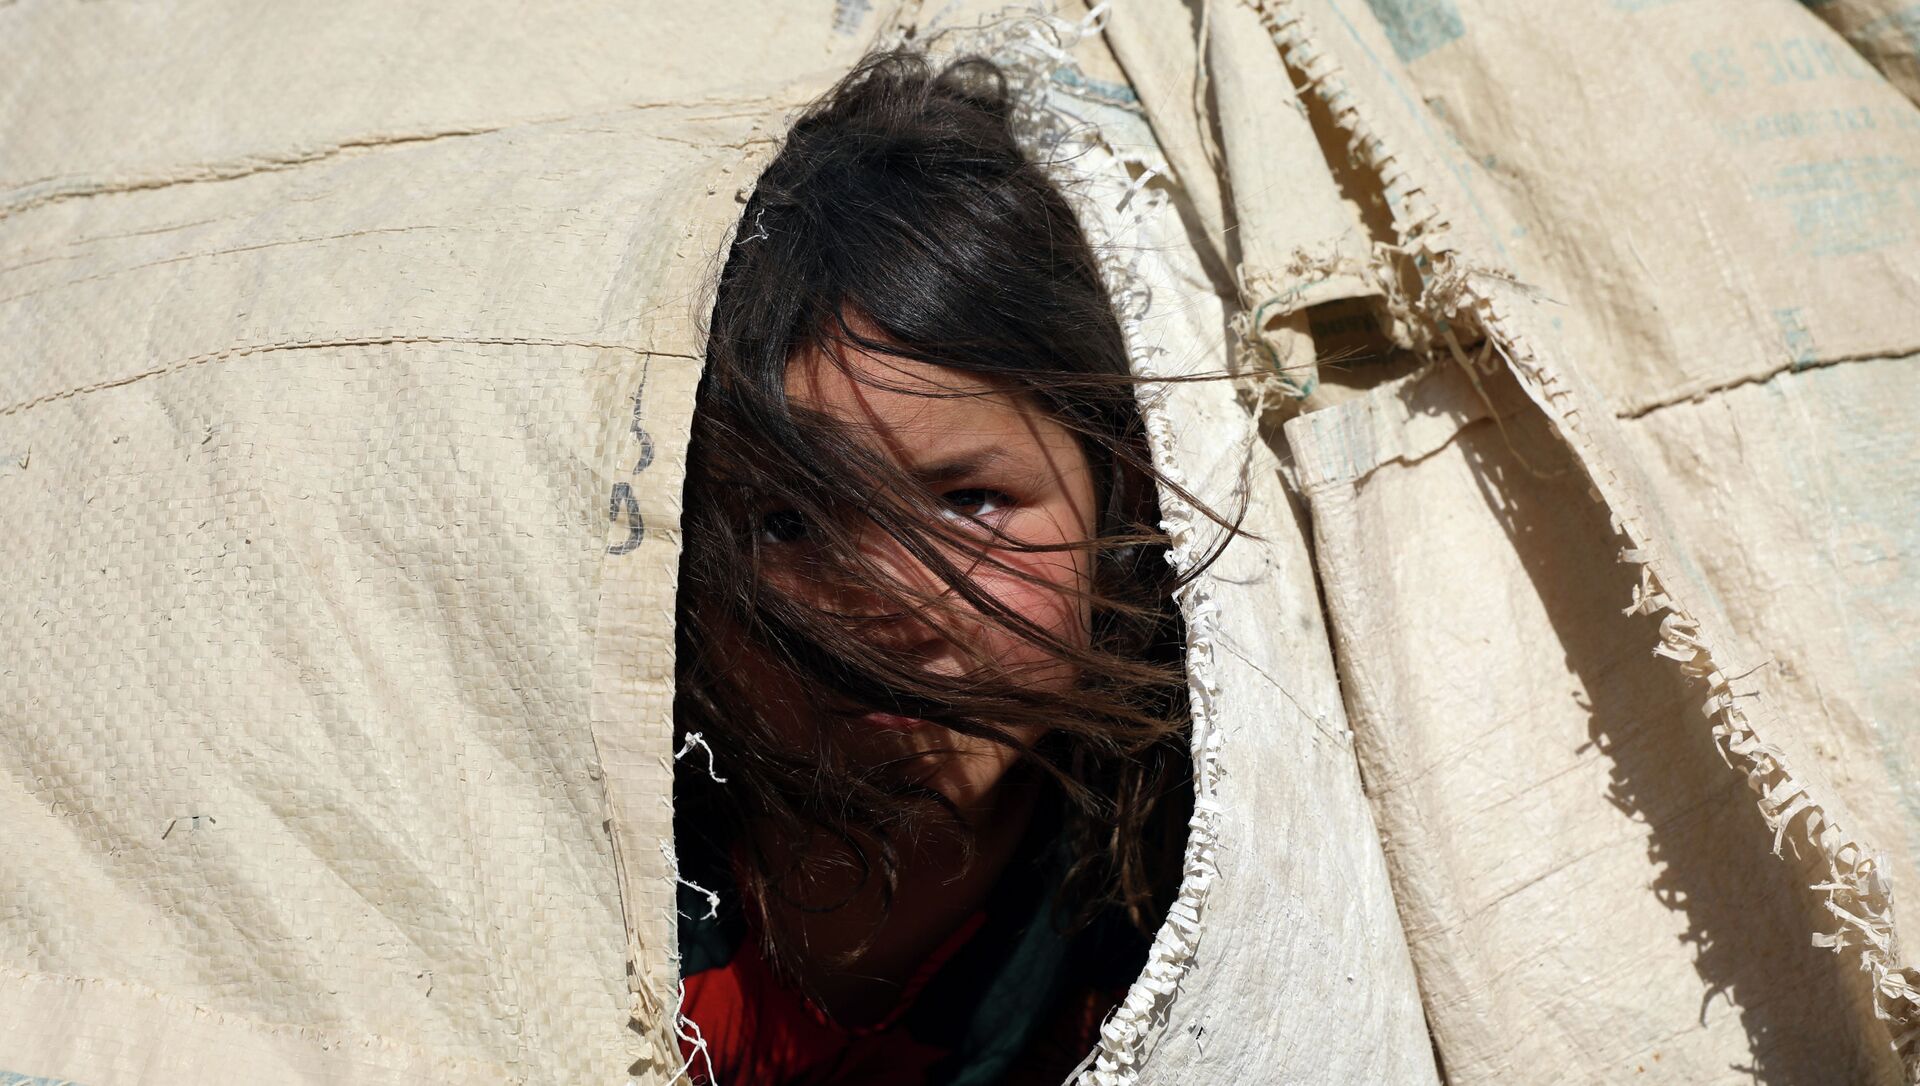 Афганская девочка выглядывает сквозь прореху в палатке в лагере беженцев  - Sputnik Қазақстан, 1920, 17.08.2021